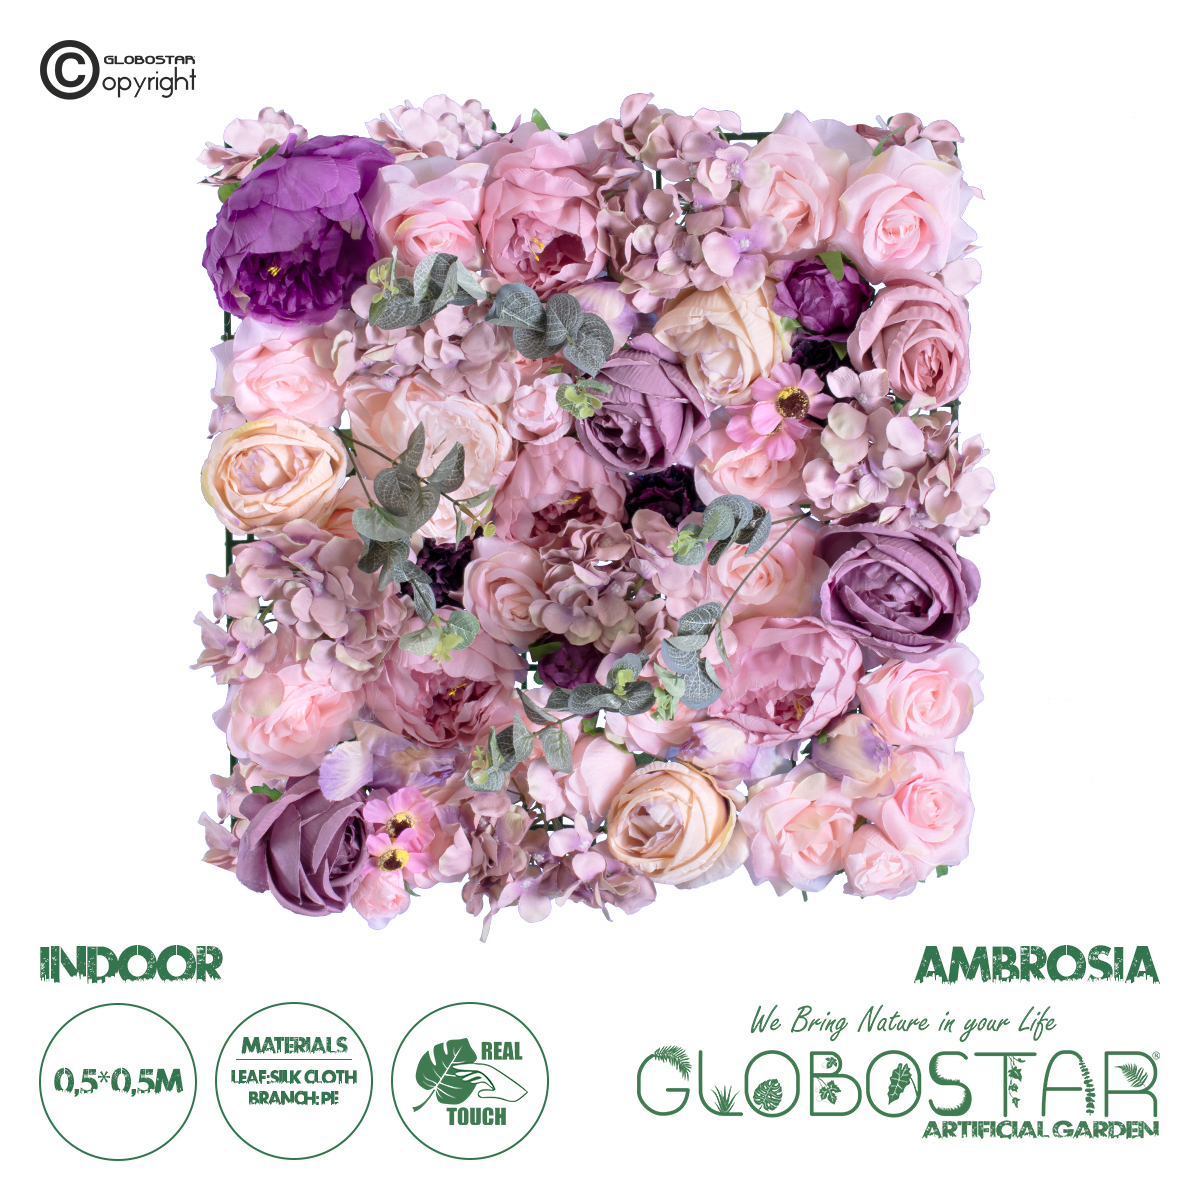 GloboStar® Artificial Garden AMBROSIA 20265 Τεχνητό Διακοσμητικό Πάνελ Λουλουδιών – Κάθετος Κήπος σύνθεση Αμβροσία Μ50 x Π50 x Υ9cm